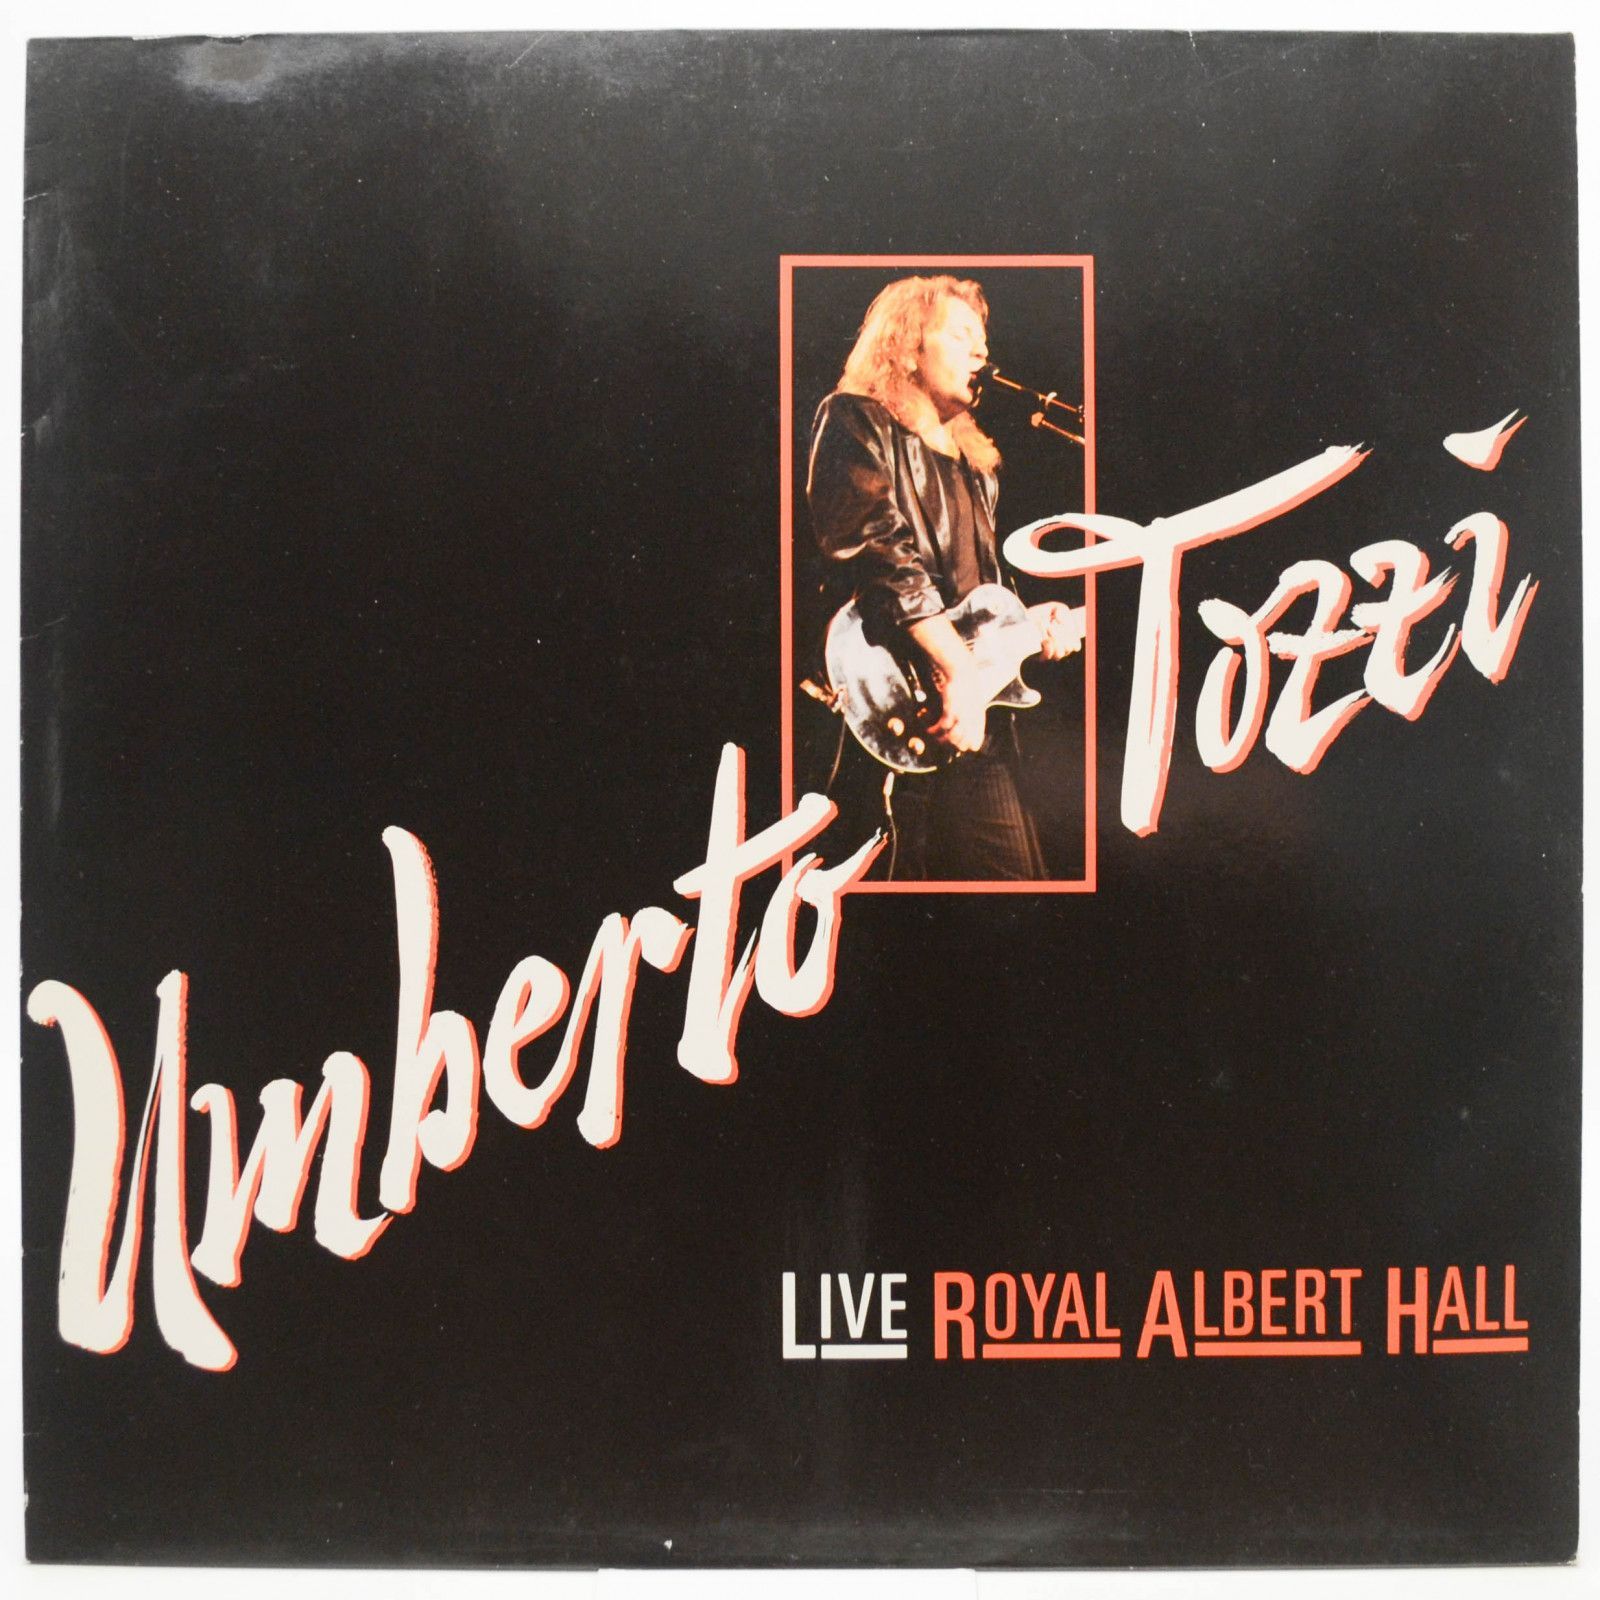 Umberto Tozzi — Live Royal Albert Hall, 1988